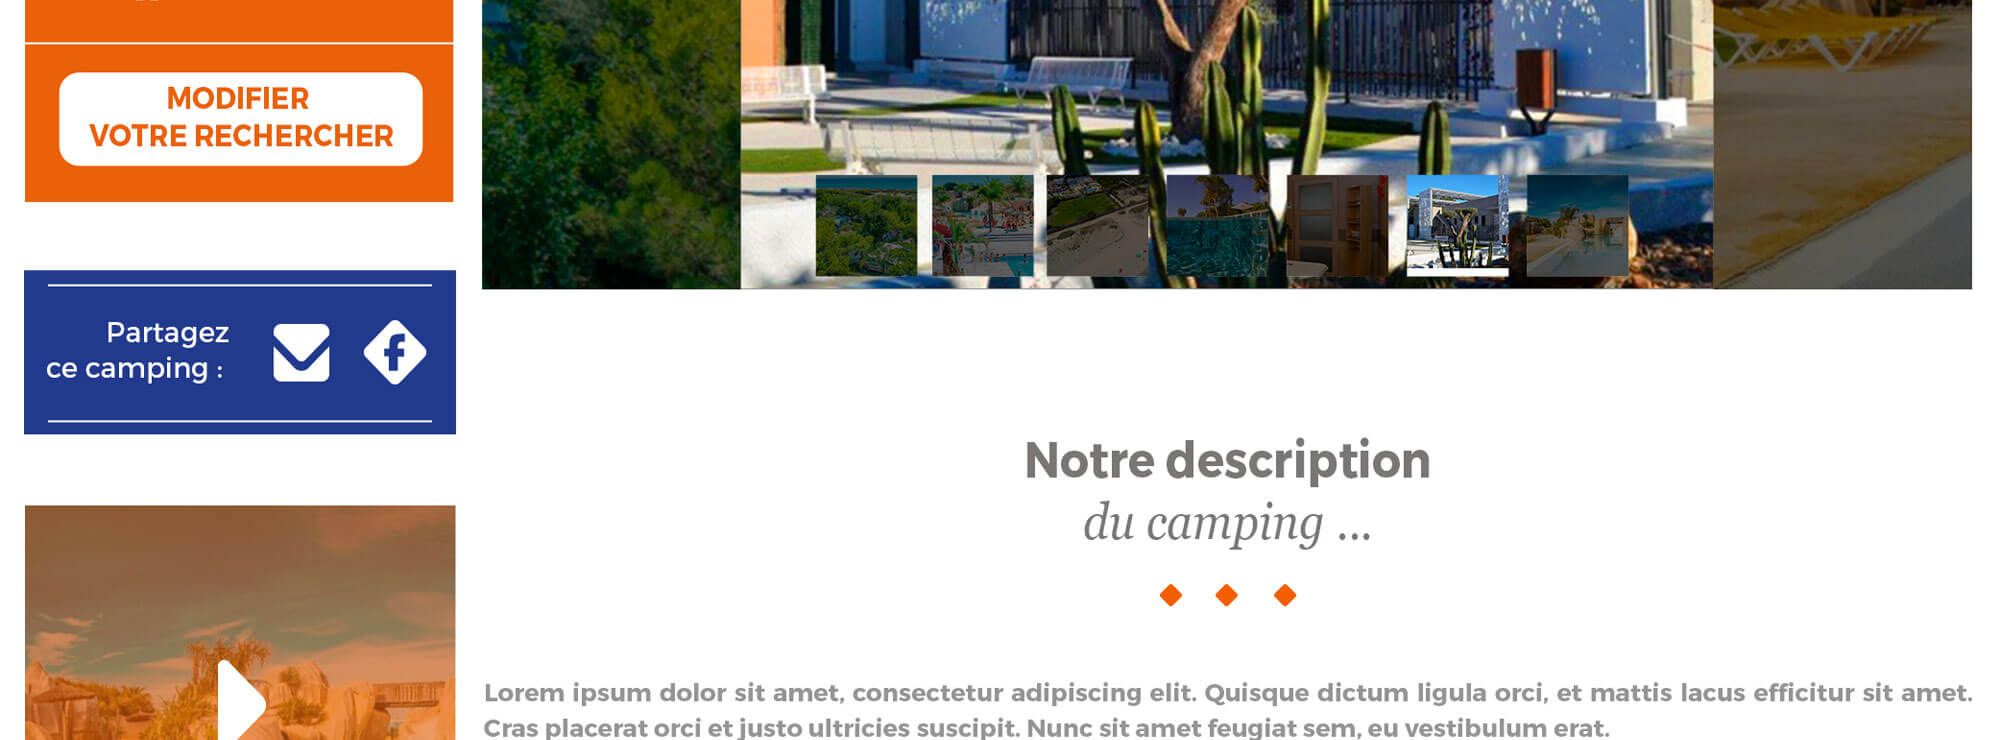 Mycamping.com - #EC6100_a identity designed to camp out